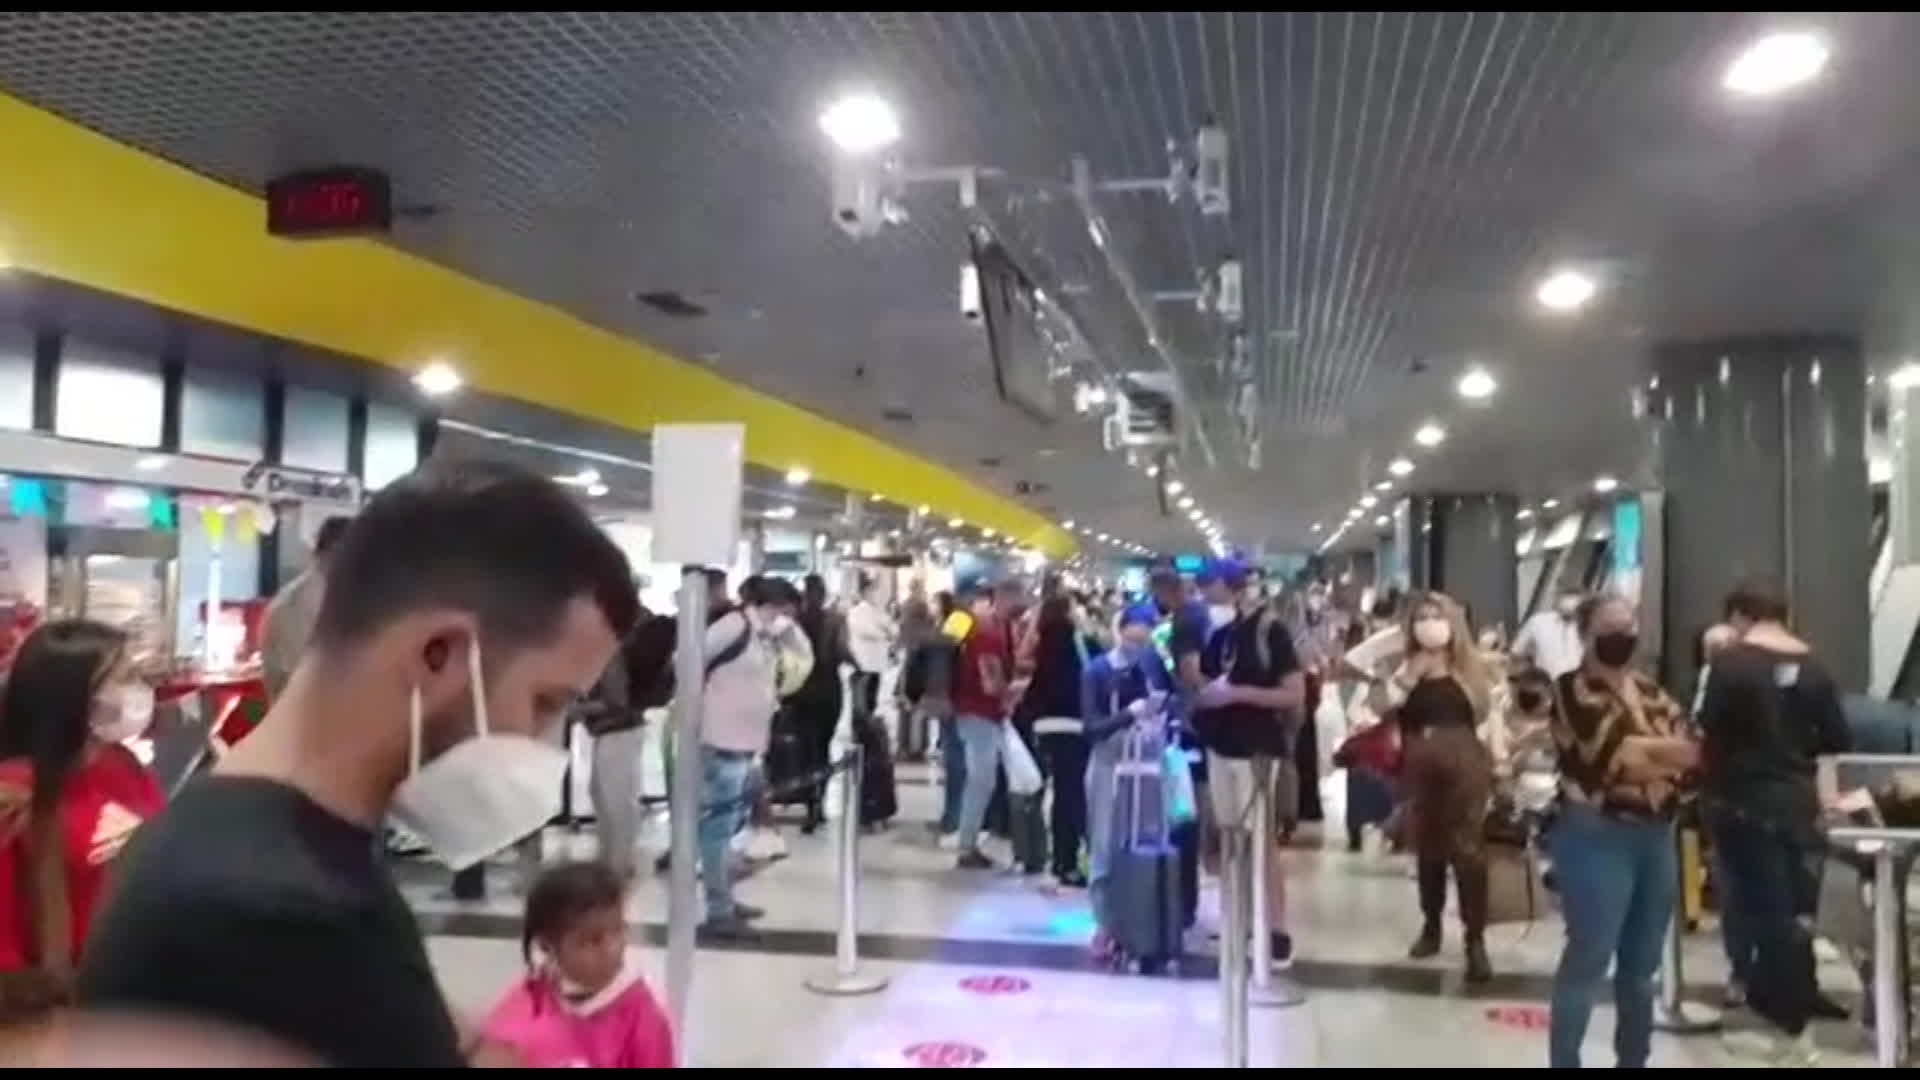 Aeroporto do Recife tem falha na iluminação da pista e problema afeta decolagem e pouso de aviões